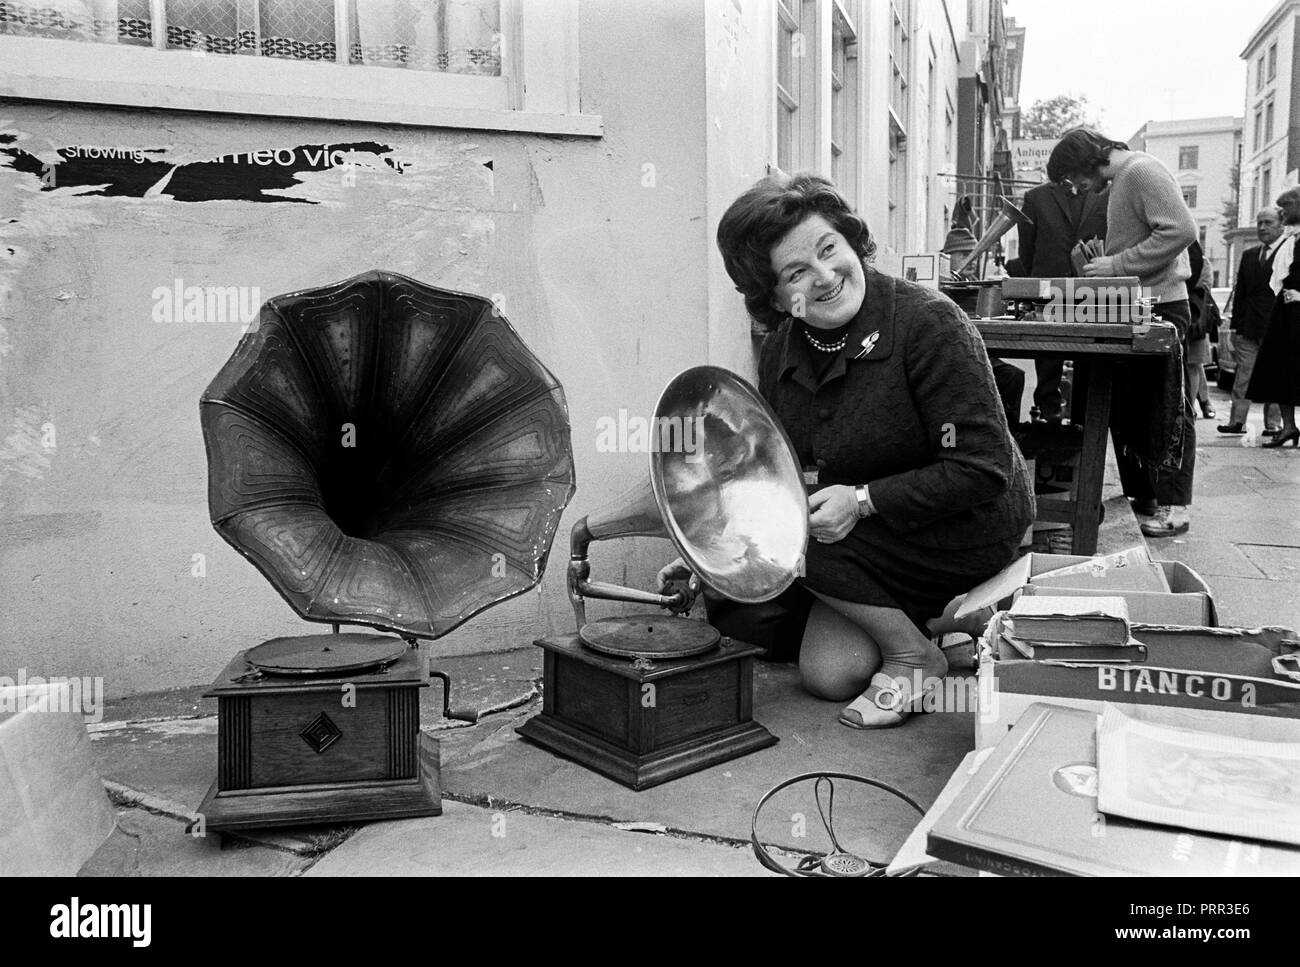 Swedish Opera star sourcils Birgit Nilsson le bric à brac et d'antiquités au marché de Portobello Road à Notting Hill London en 1970 Banque D'Images